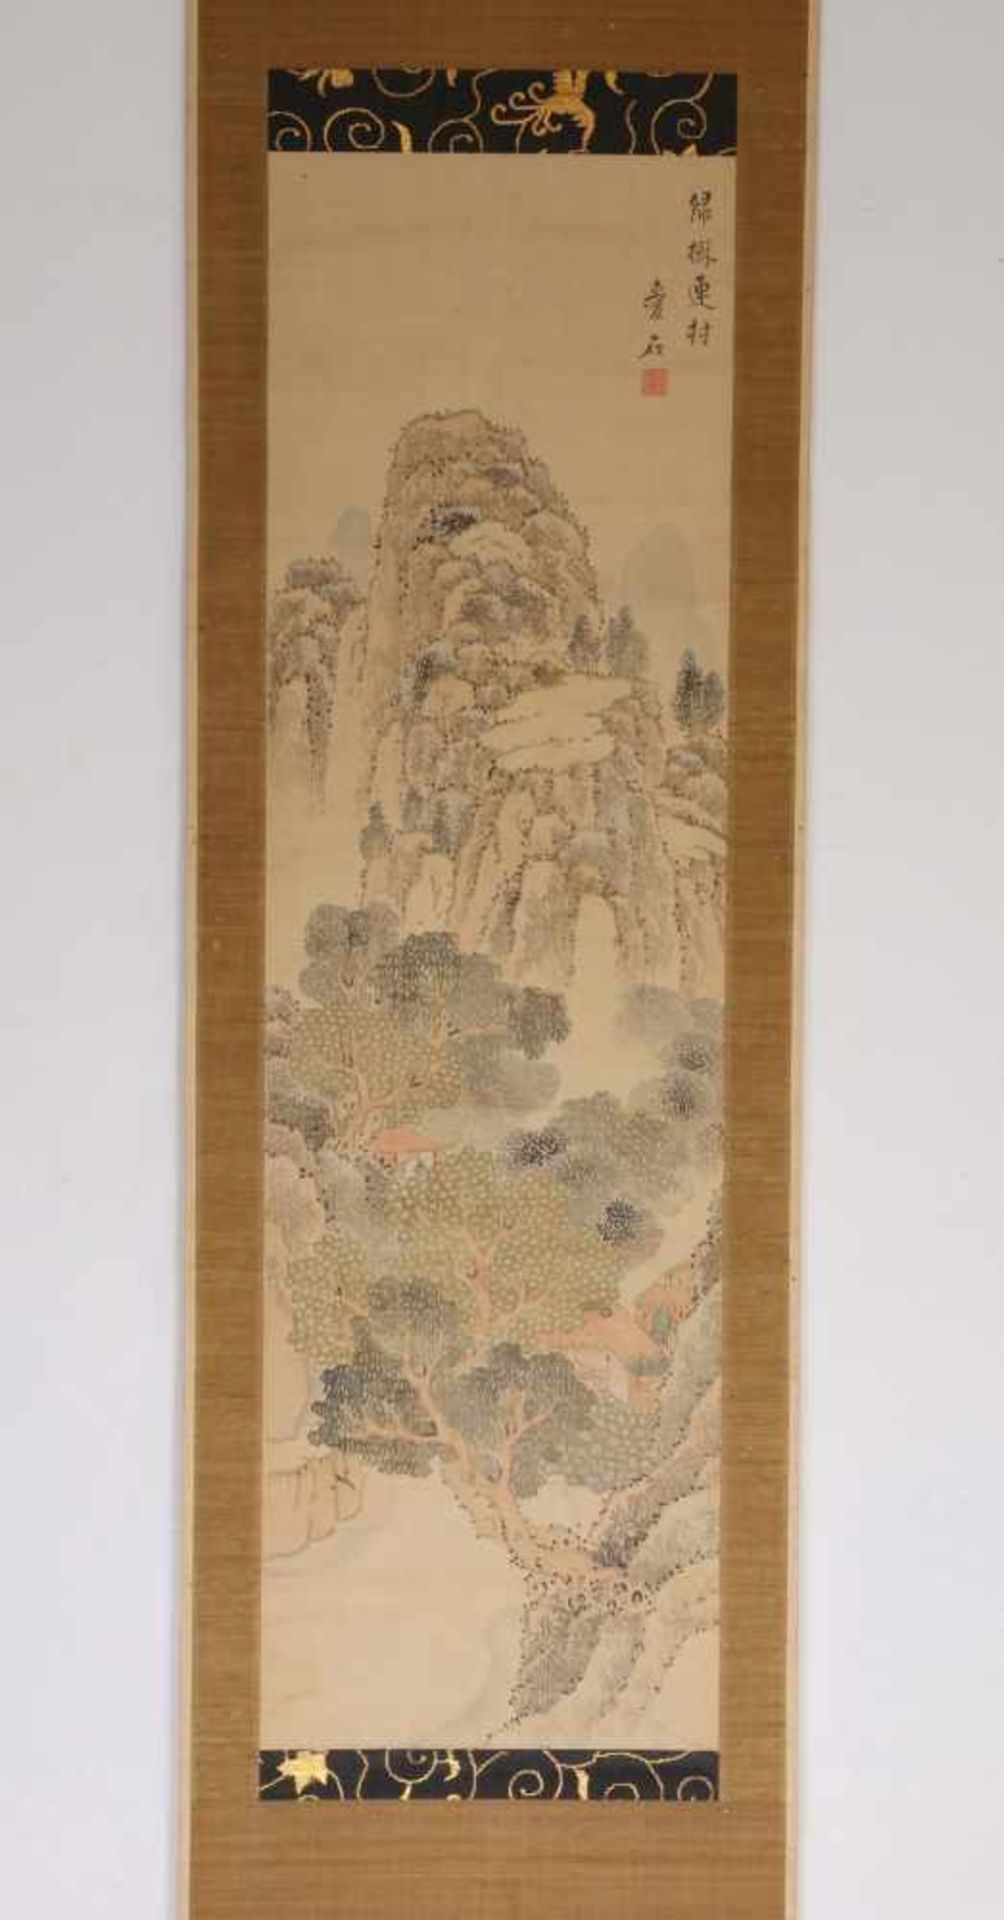 Japan, rolschildering, getint landschapin de stijl van Ikeno Taiga door monnik Aiseki; h. 105 en